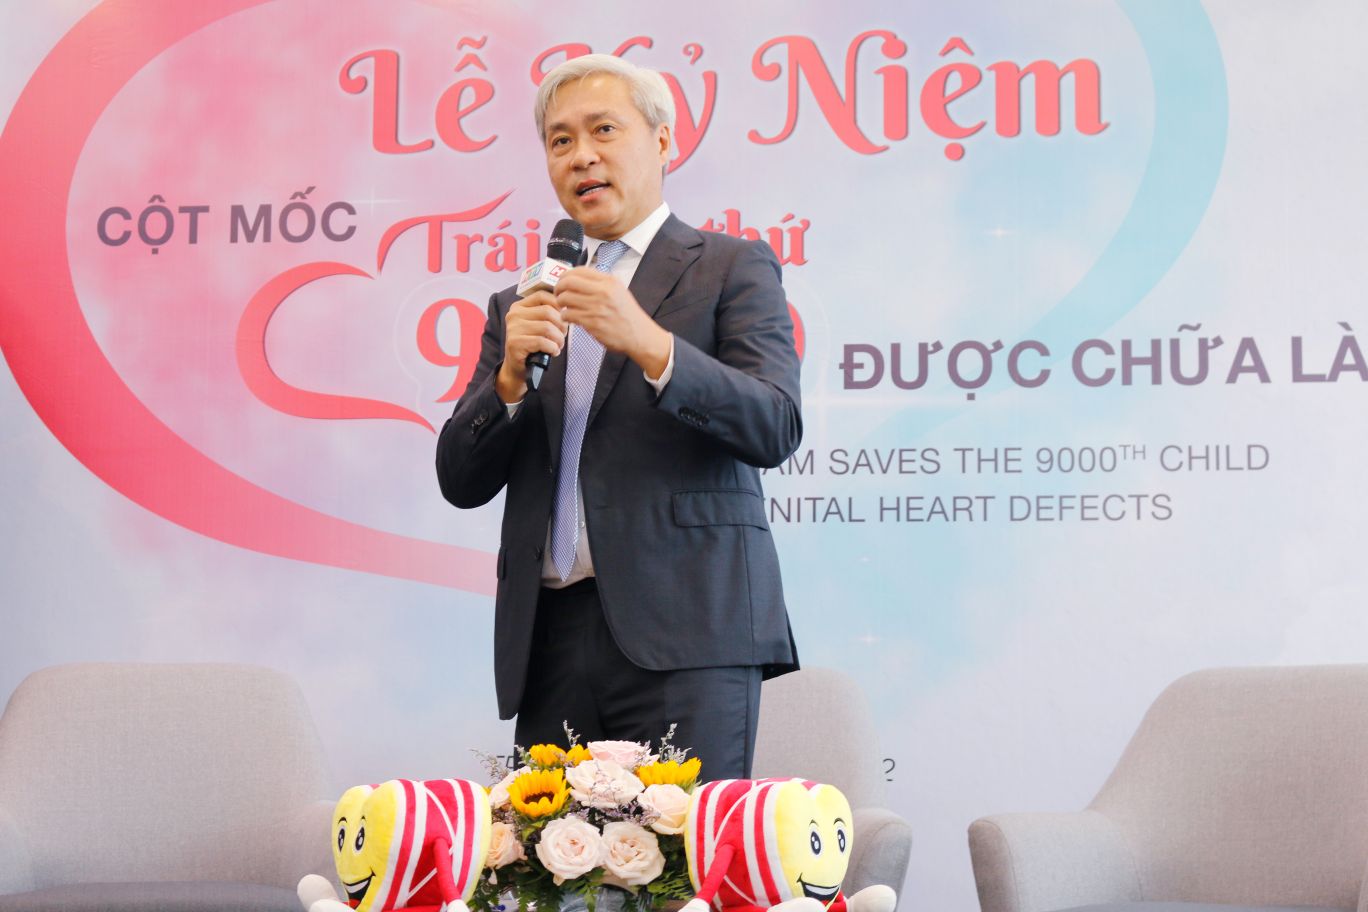 Ông Don Lam phát biểu tại buổi lễ Nhịp tim Việt Nam kỷ niệm cột mốc trái tim thứ 9.000 được chữa lành